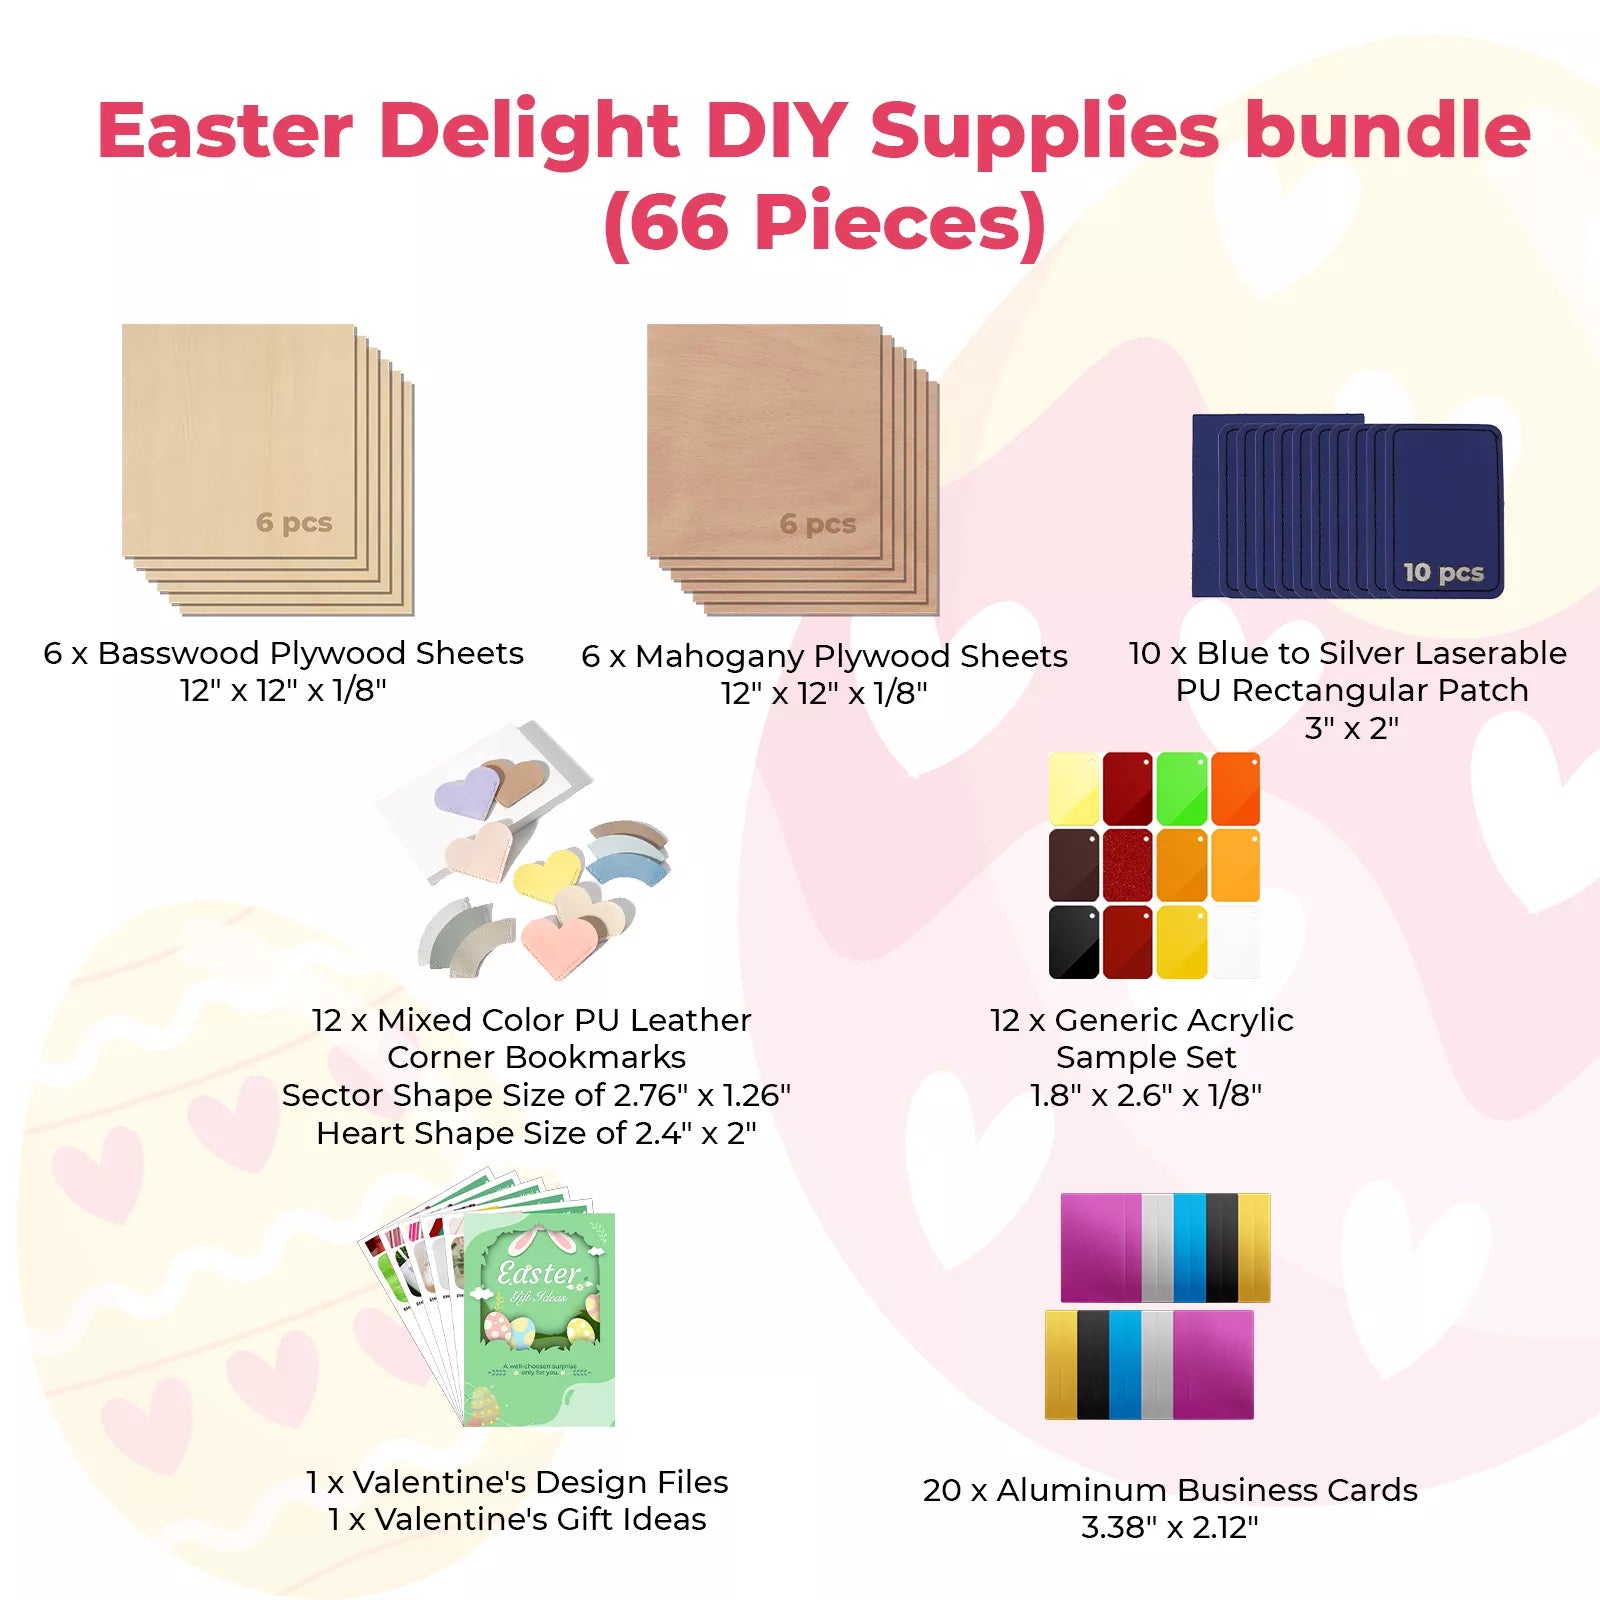 Easter Delight DIY Supplies bundle (66 Pieces)